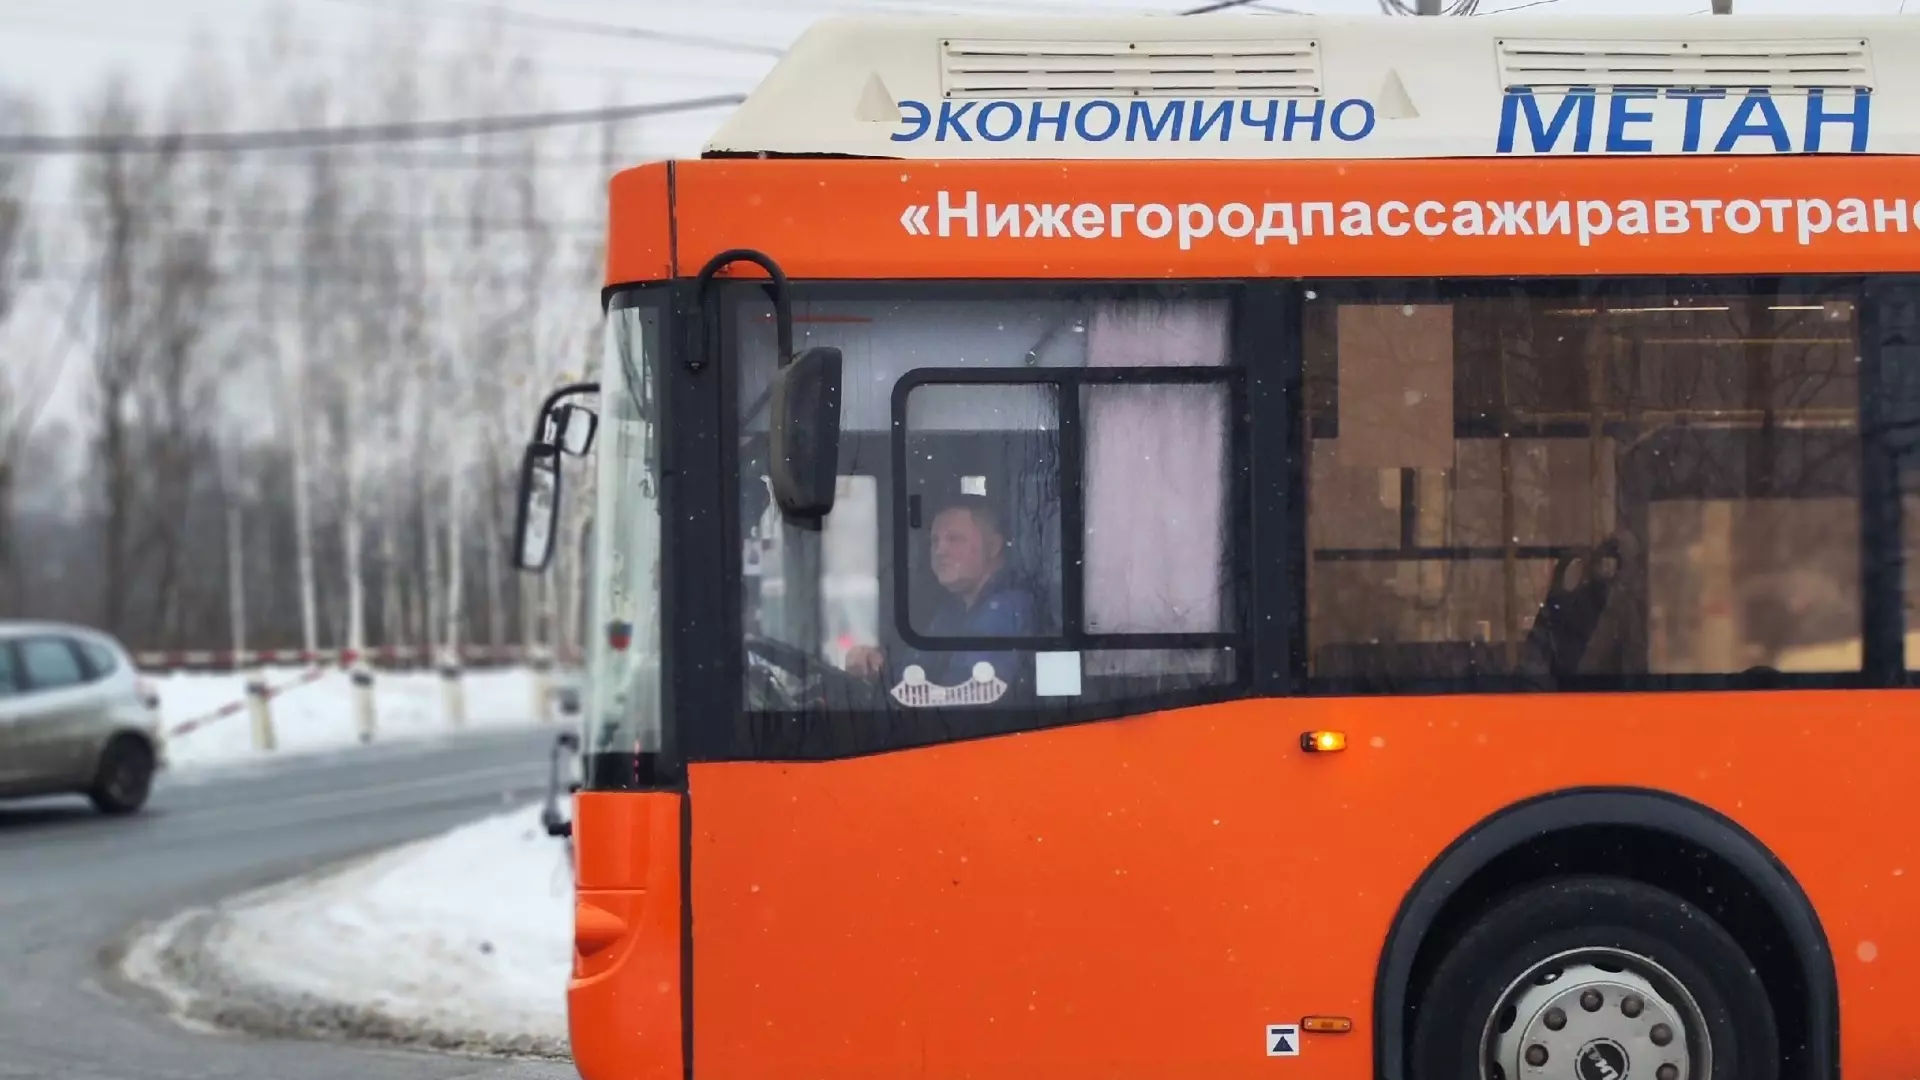 А-90 назвали самым популярным автобусом у нижегородцев